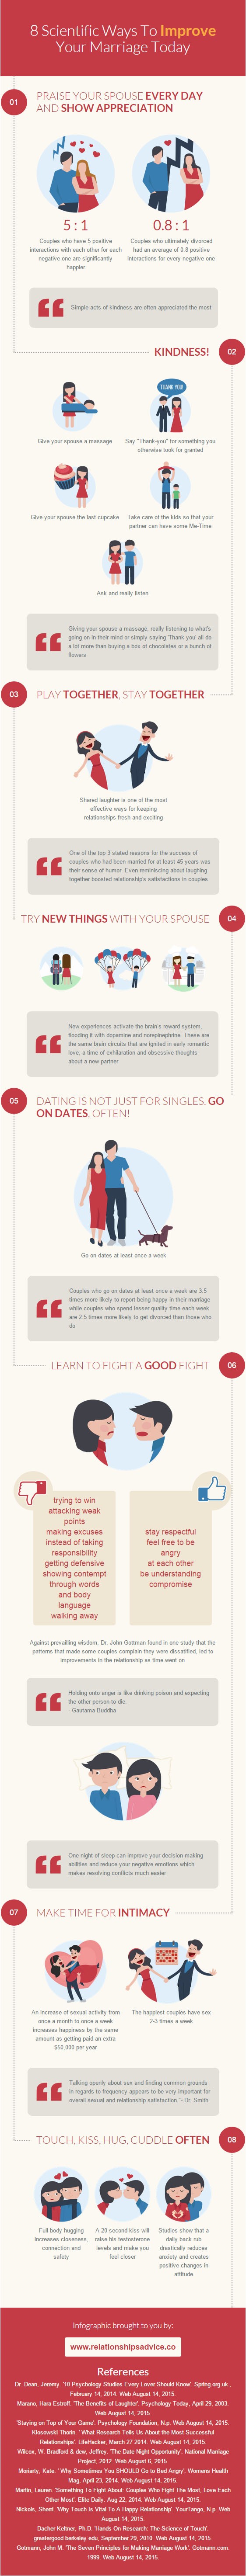 Aké sú tajomstvá šťastného manželstva? (Infographic: relationsadvice.co)